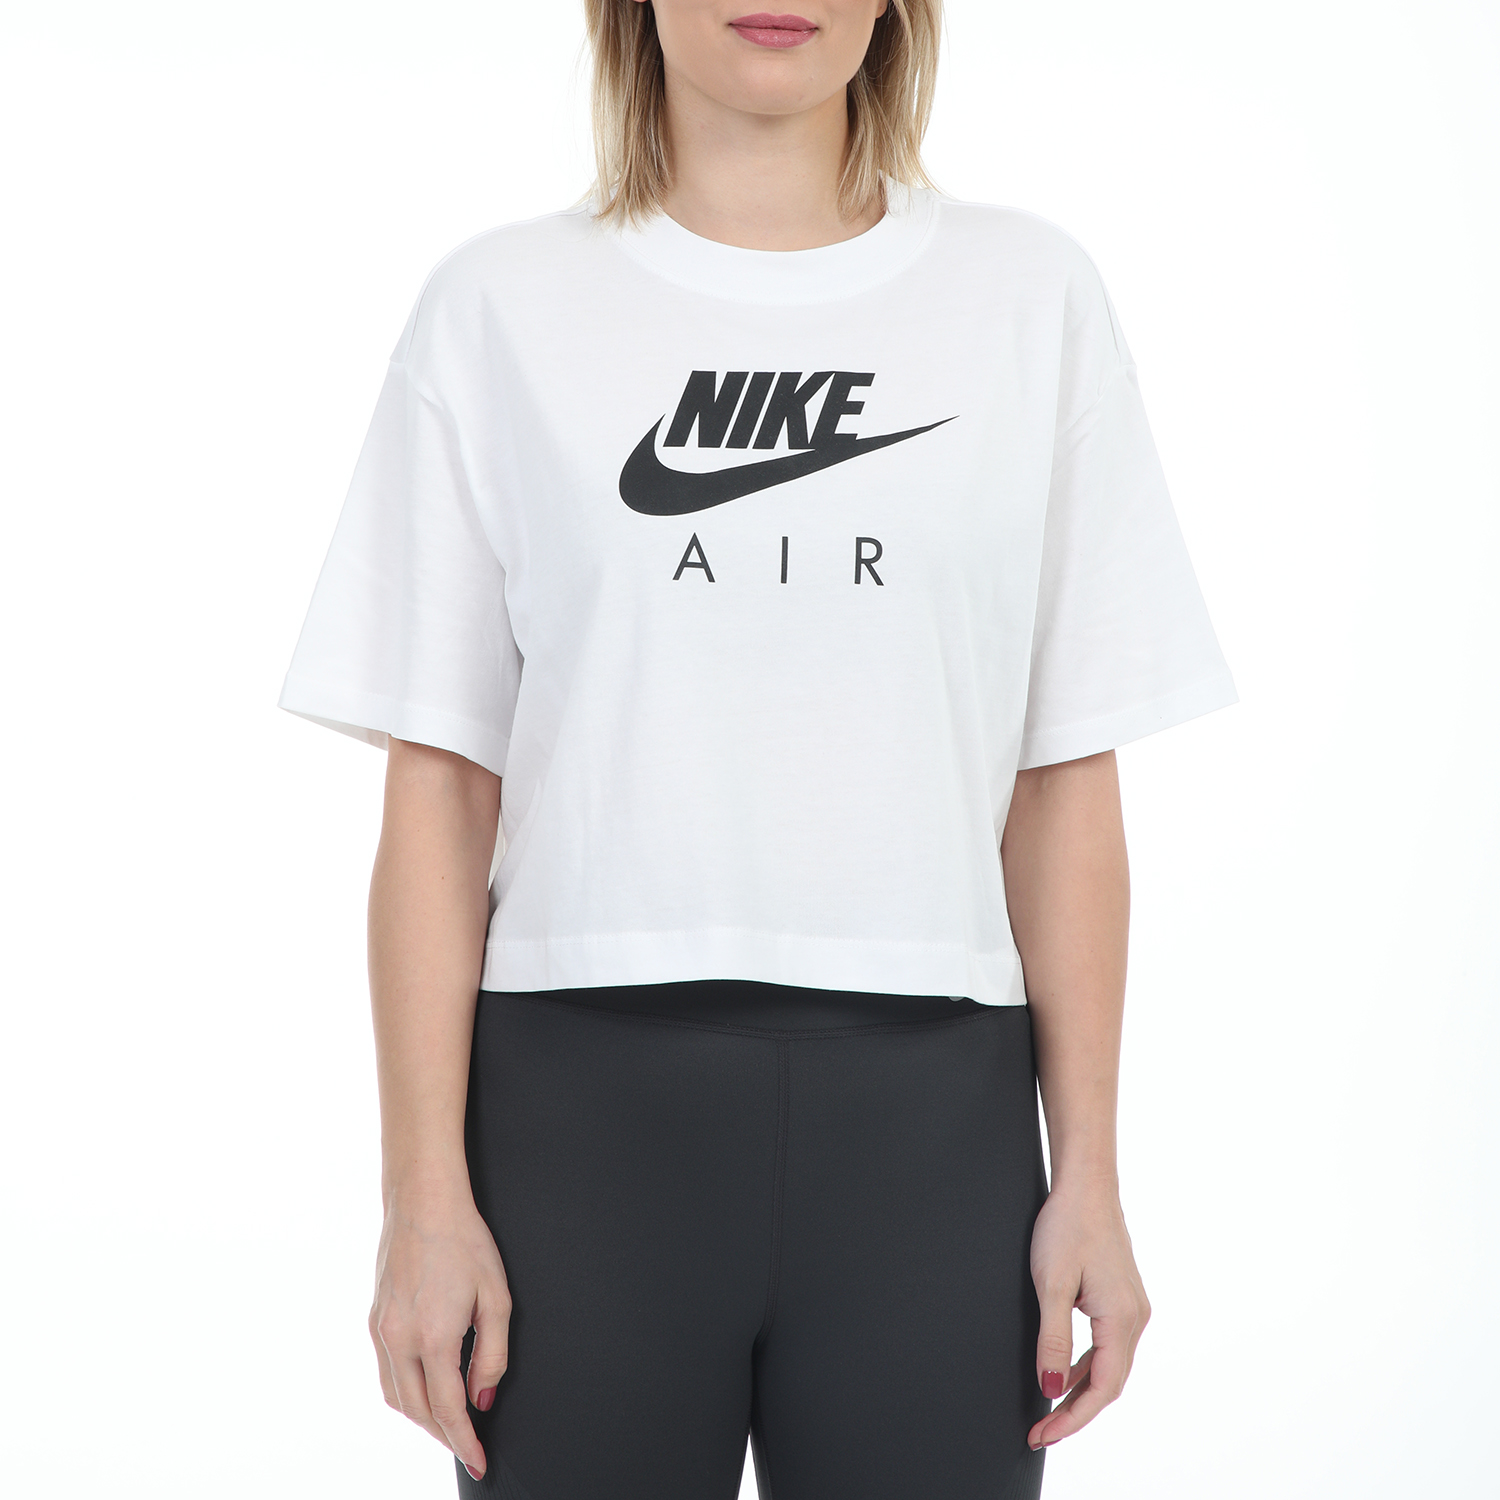 Γυναικεία/Ρούχα/Αθλητικά/T-shirt-Τοπ NIKE - Γυναικείο αθλητικό cropped t-shirt NIKE NSW AIR TOP λευκό